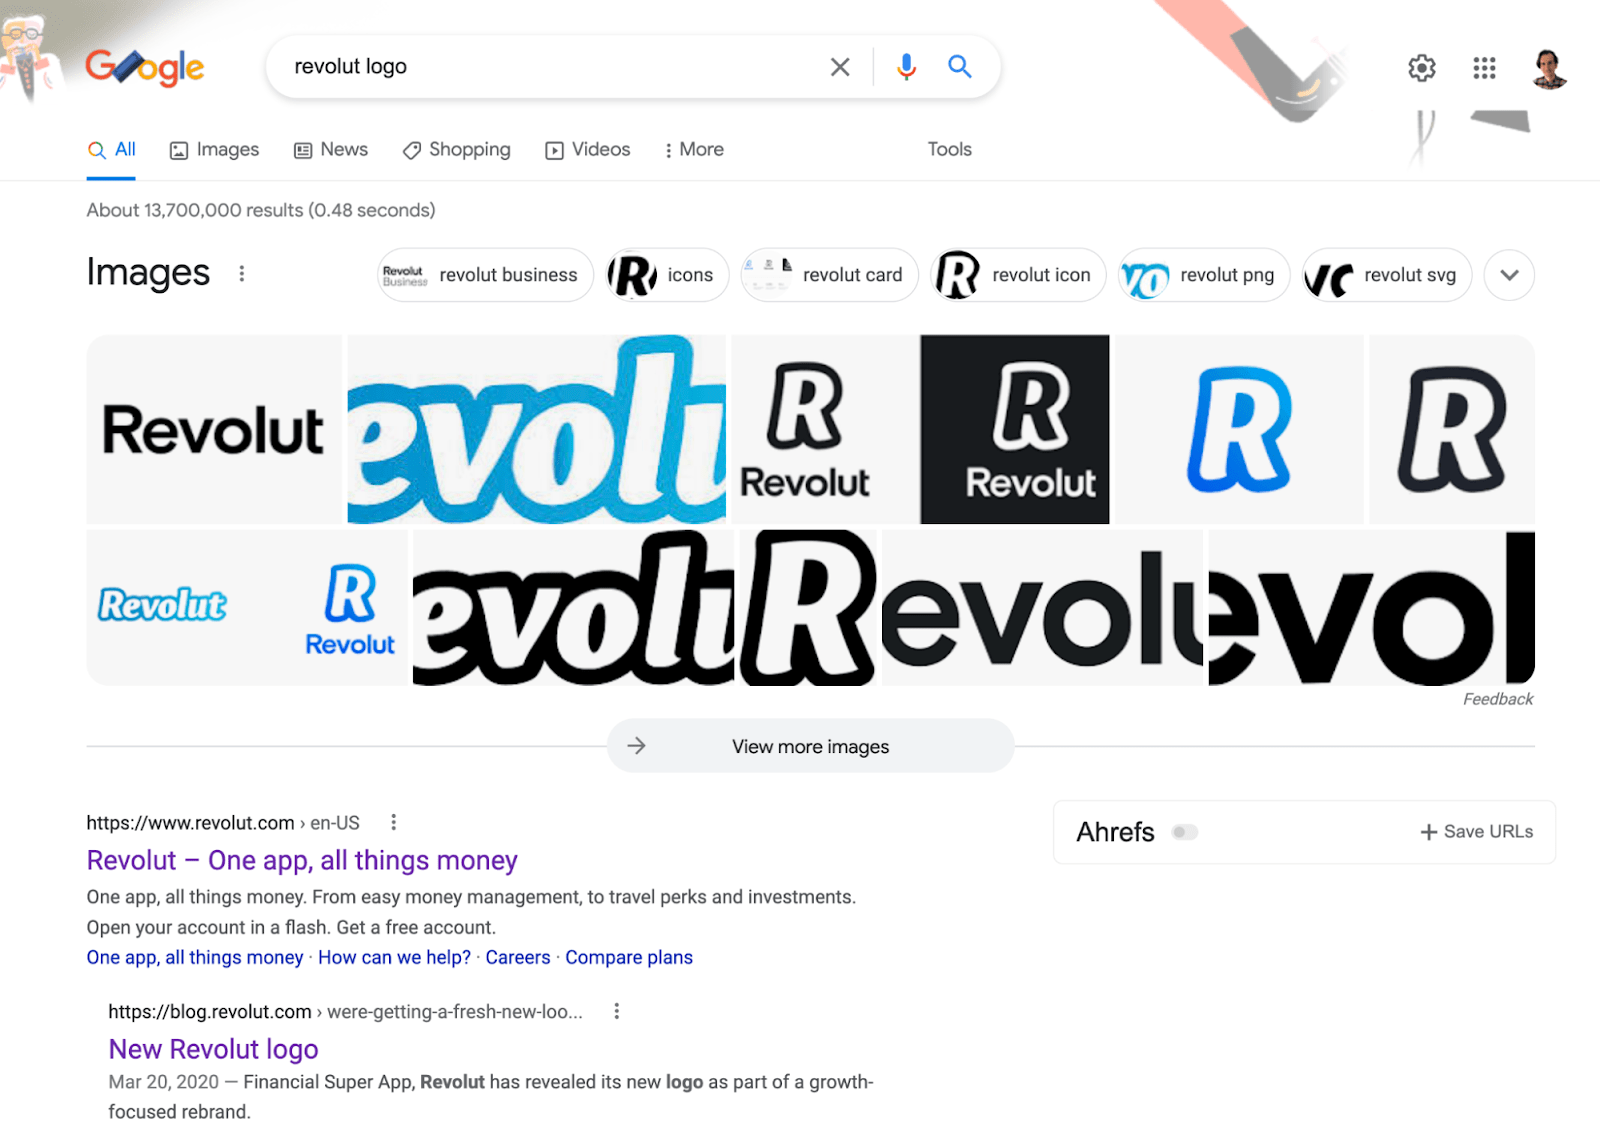 Google SERP for "revolut logo"